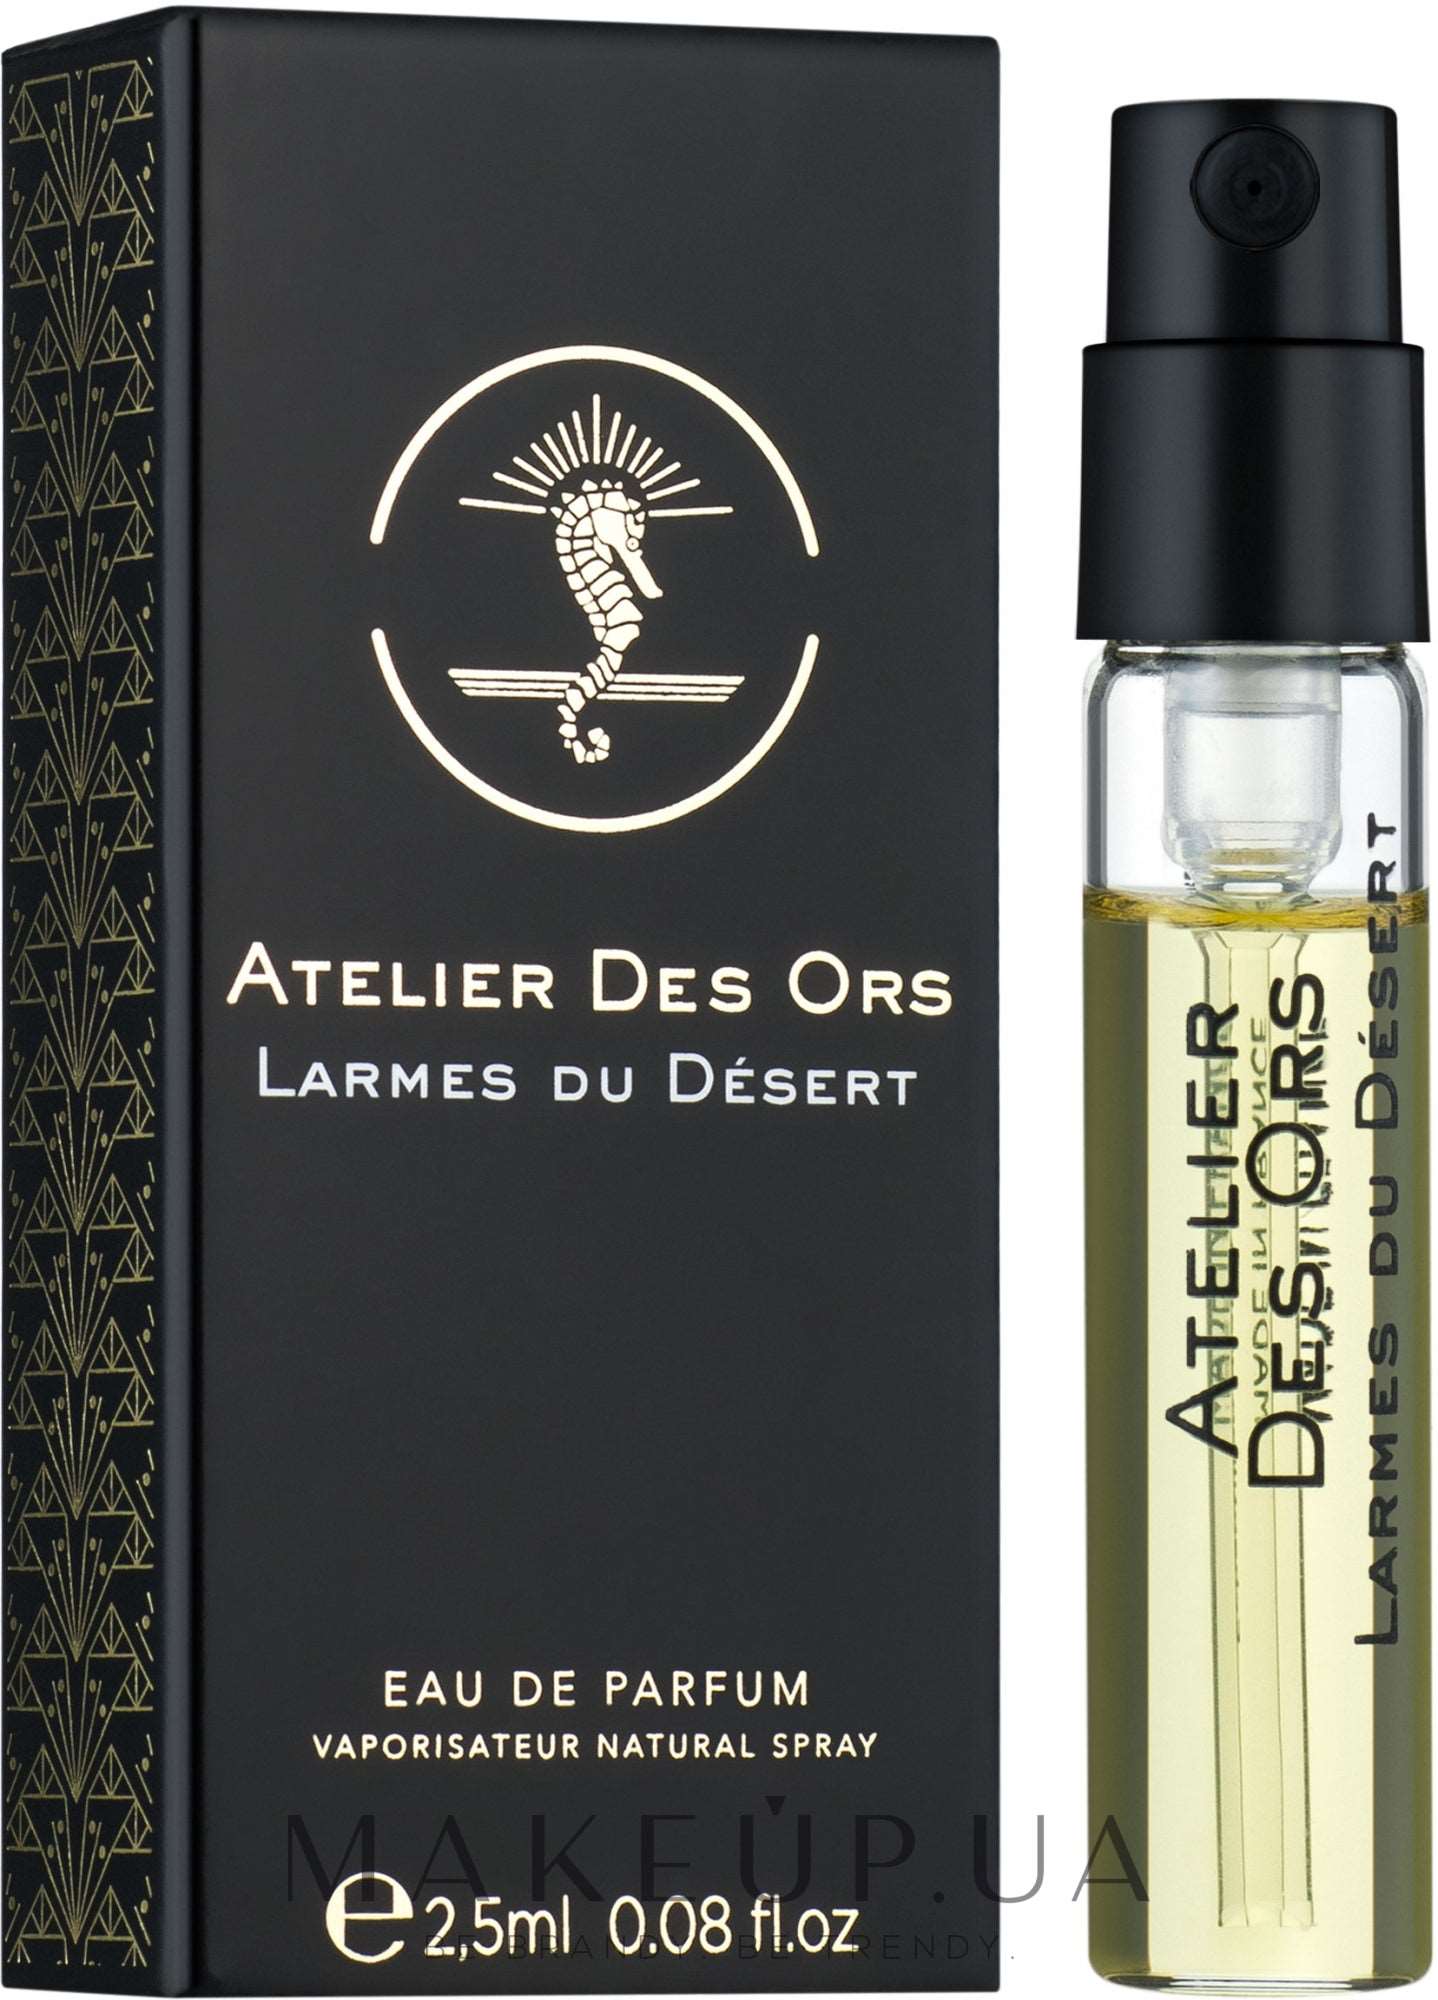 Atelier Des Ors Larmes du Desert 2.5ml 0.08 fl. oz. Resmi parfüm örnekleri